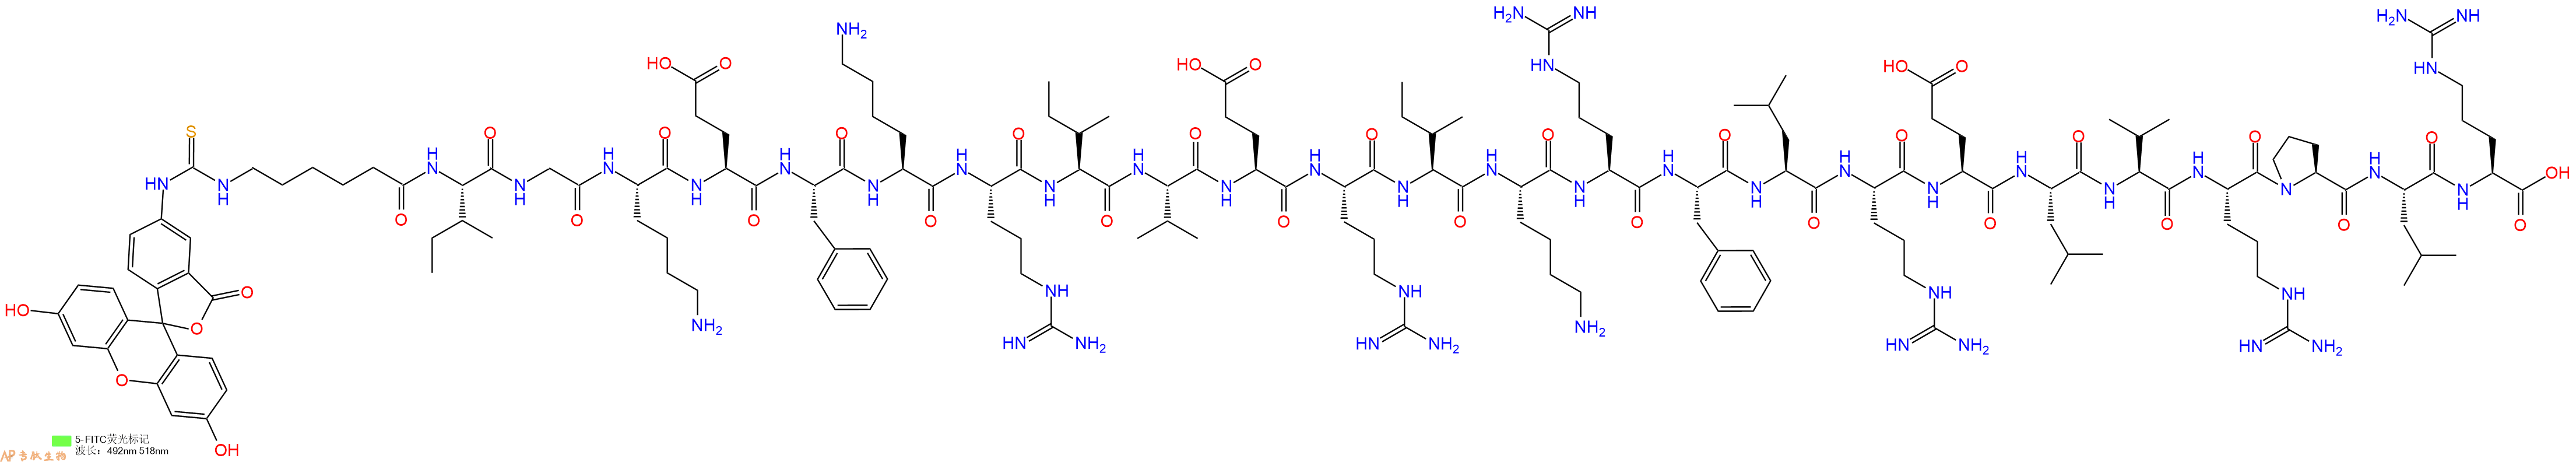 专肽生物产品5FITC-Ahx-Ile-Gly-Lys-Glu-Phe-Lys-Arg-Ile-Val-Glu-